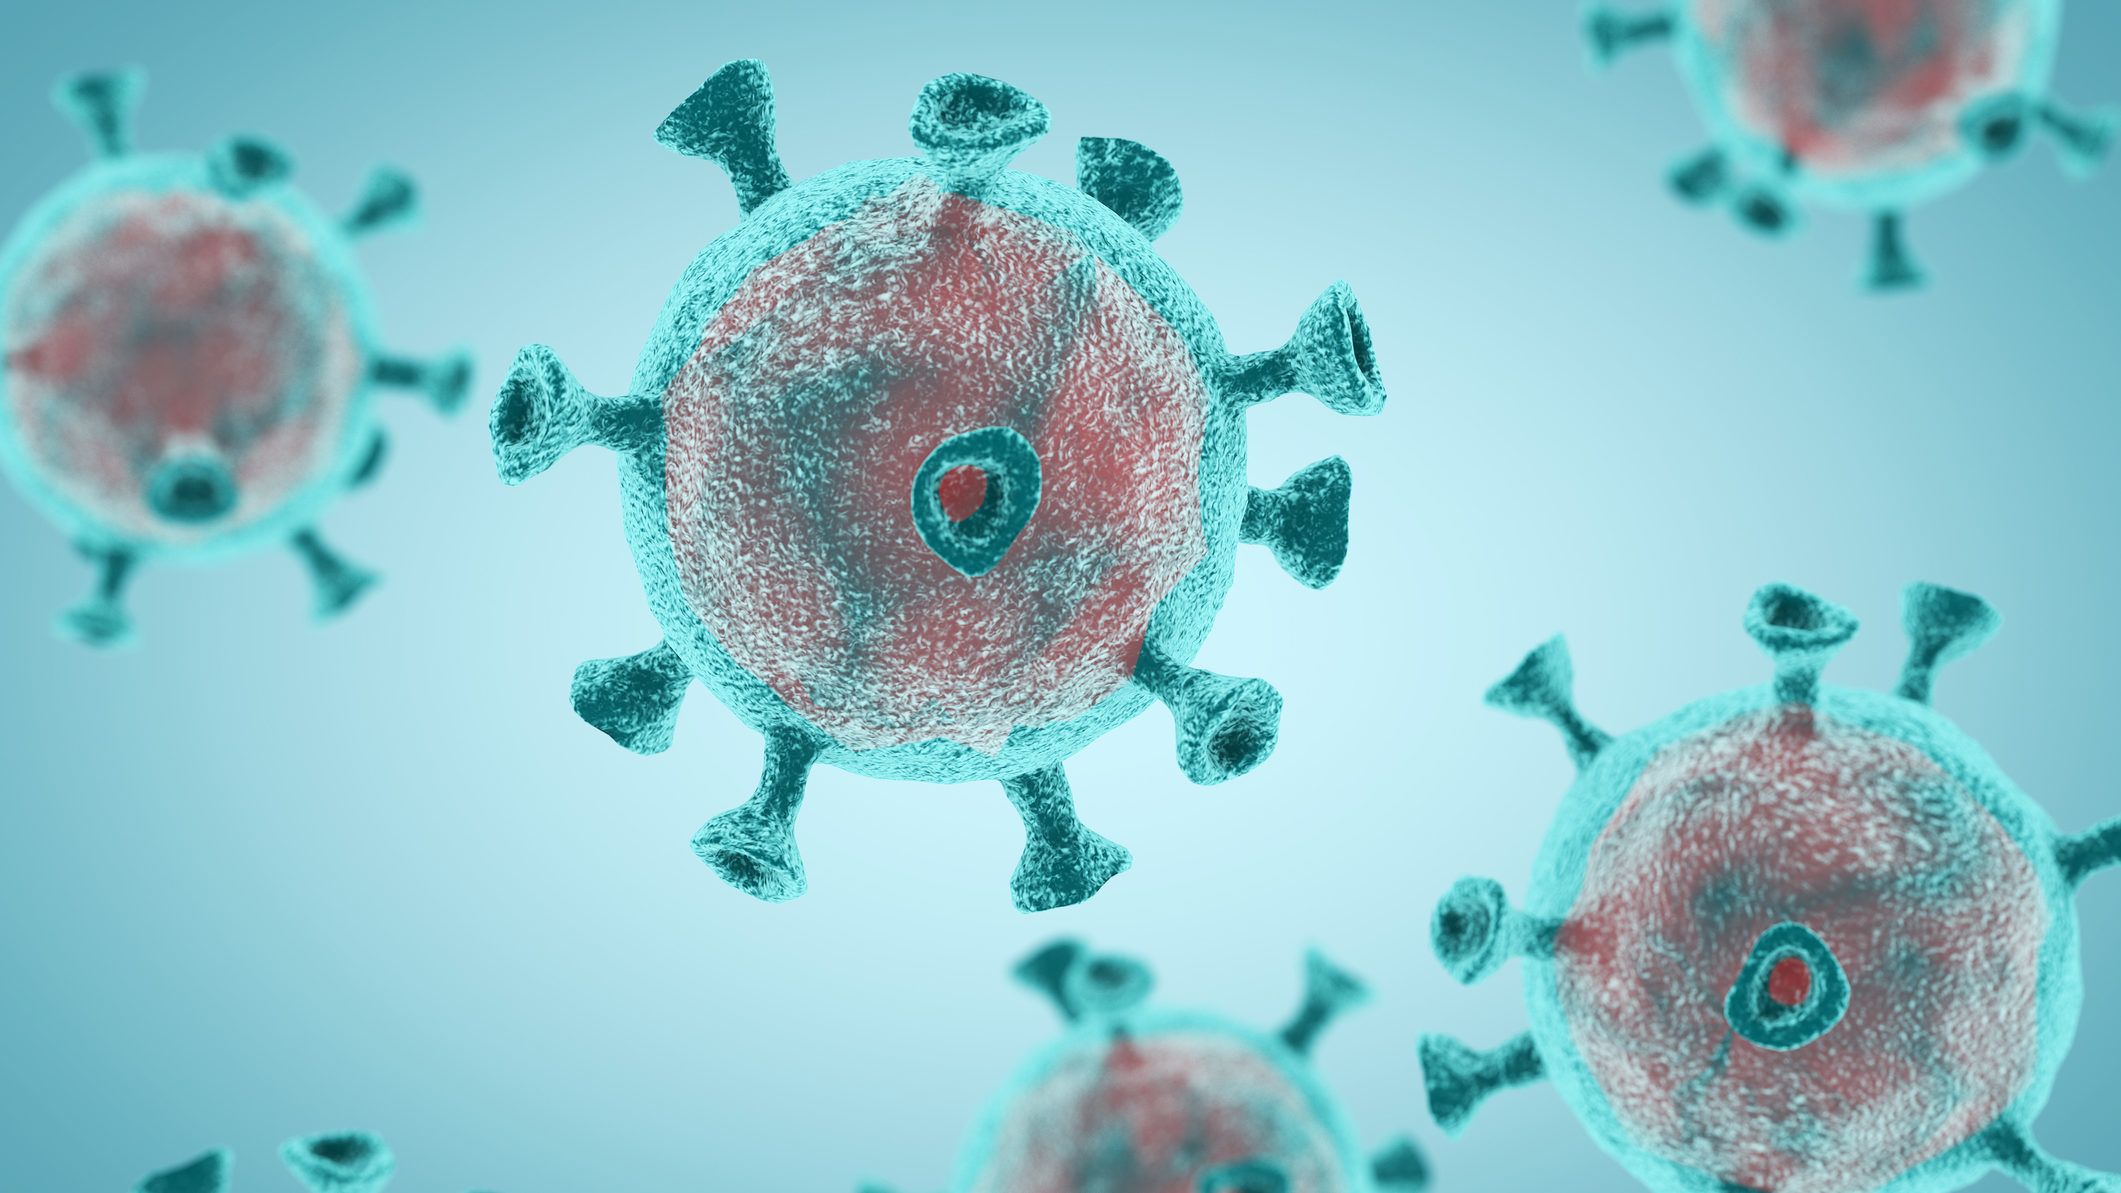 Újabb koronavírusra bukkantak, kizárható a laboratóriumi eredet